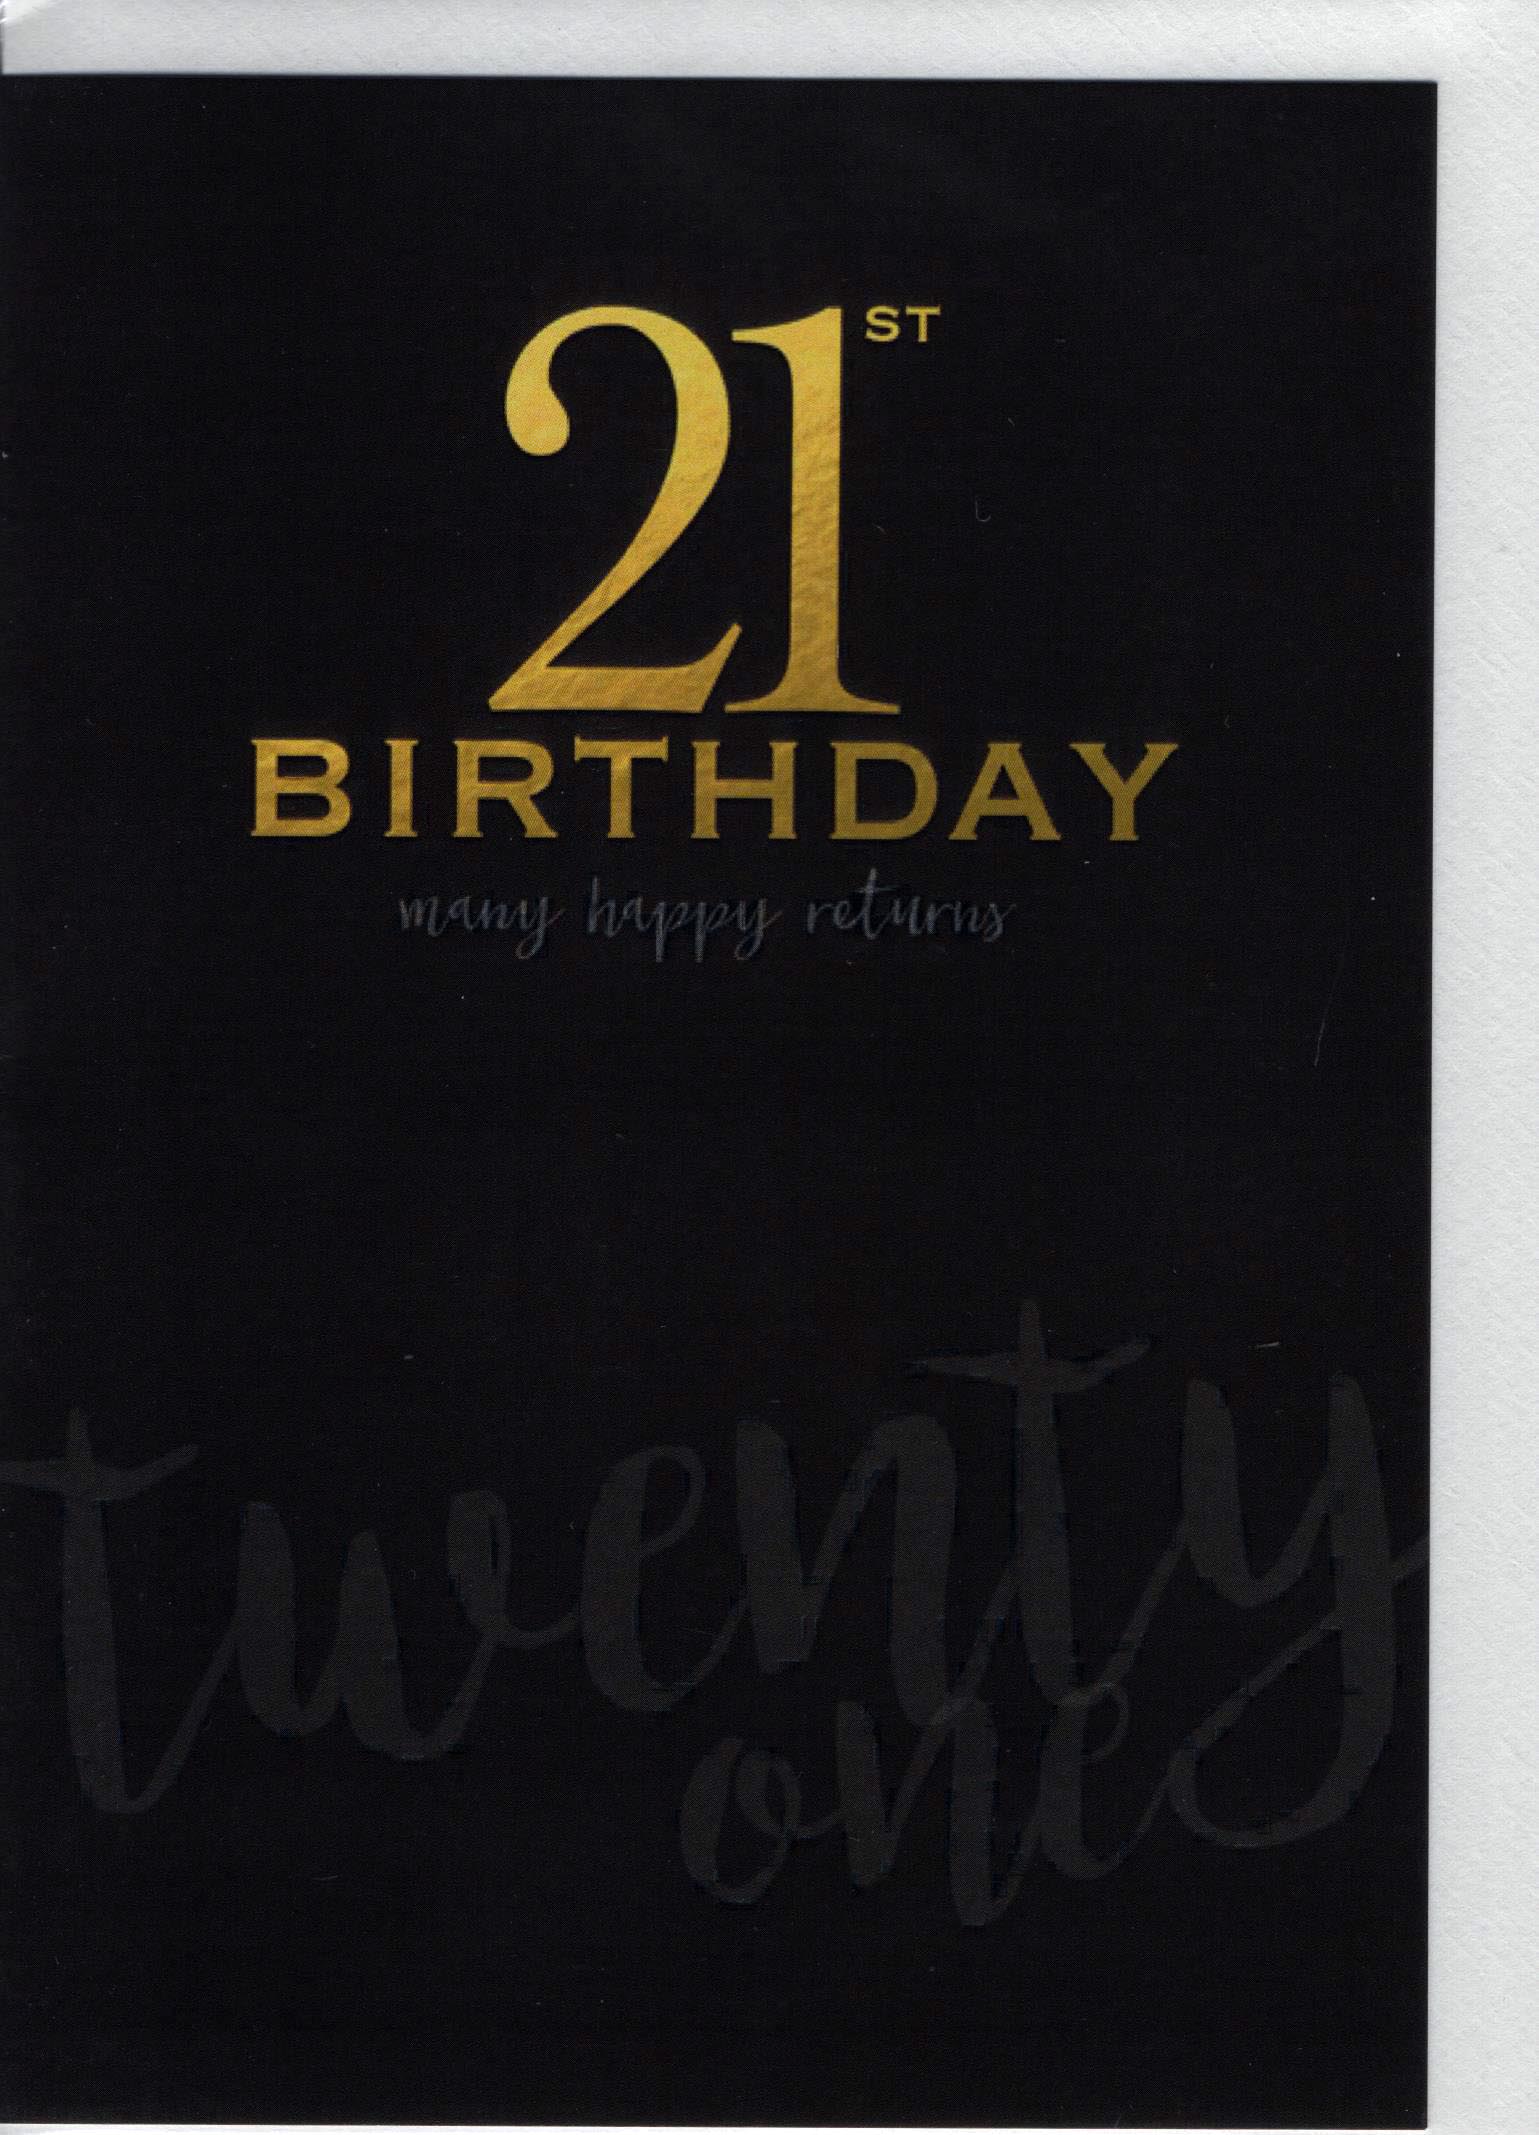 21st Birthday Many Happy retrrns twenty one